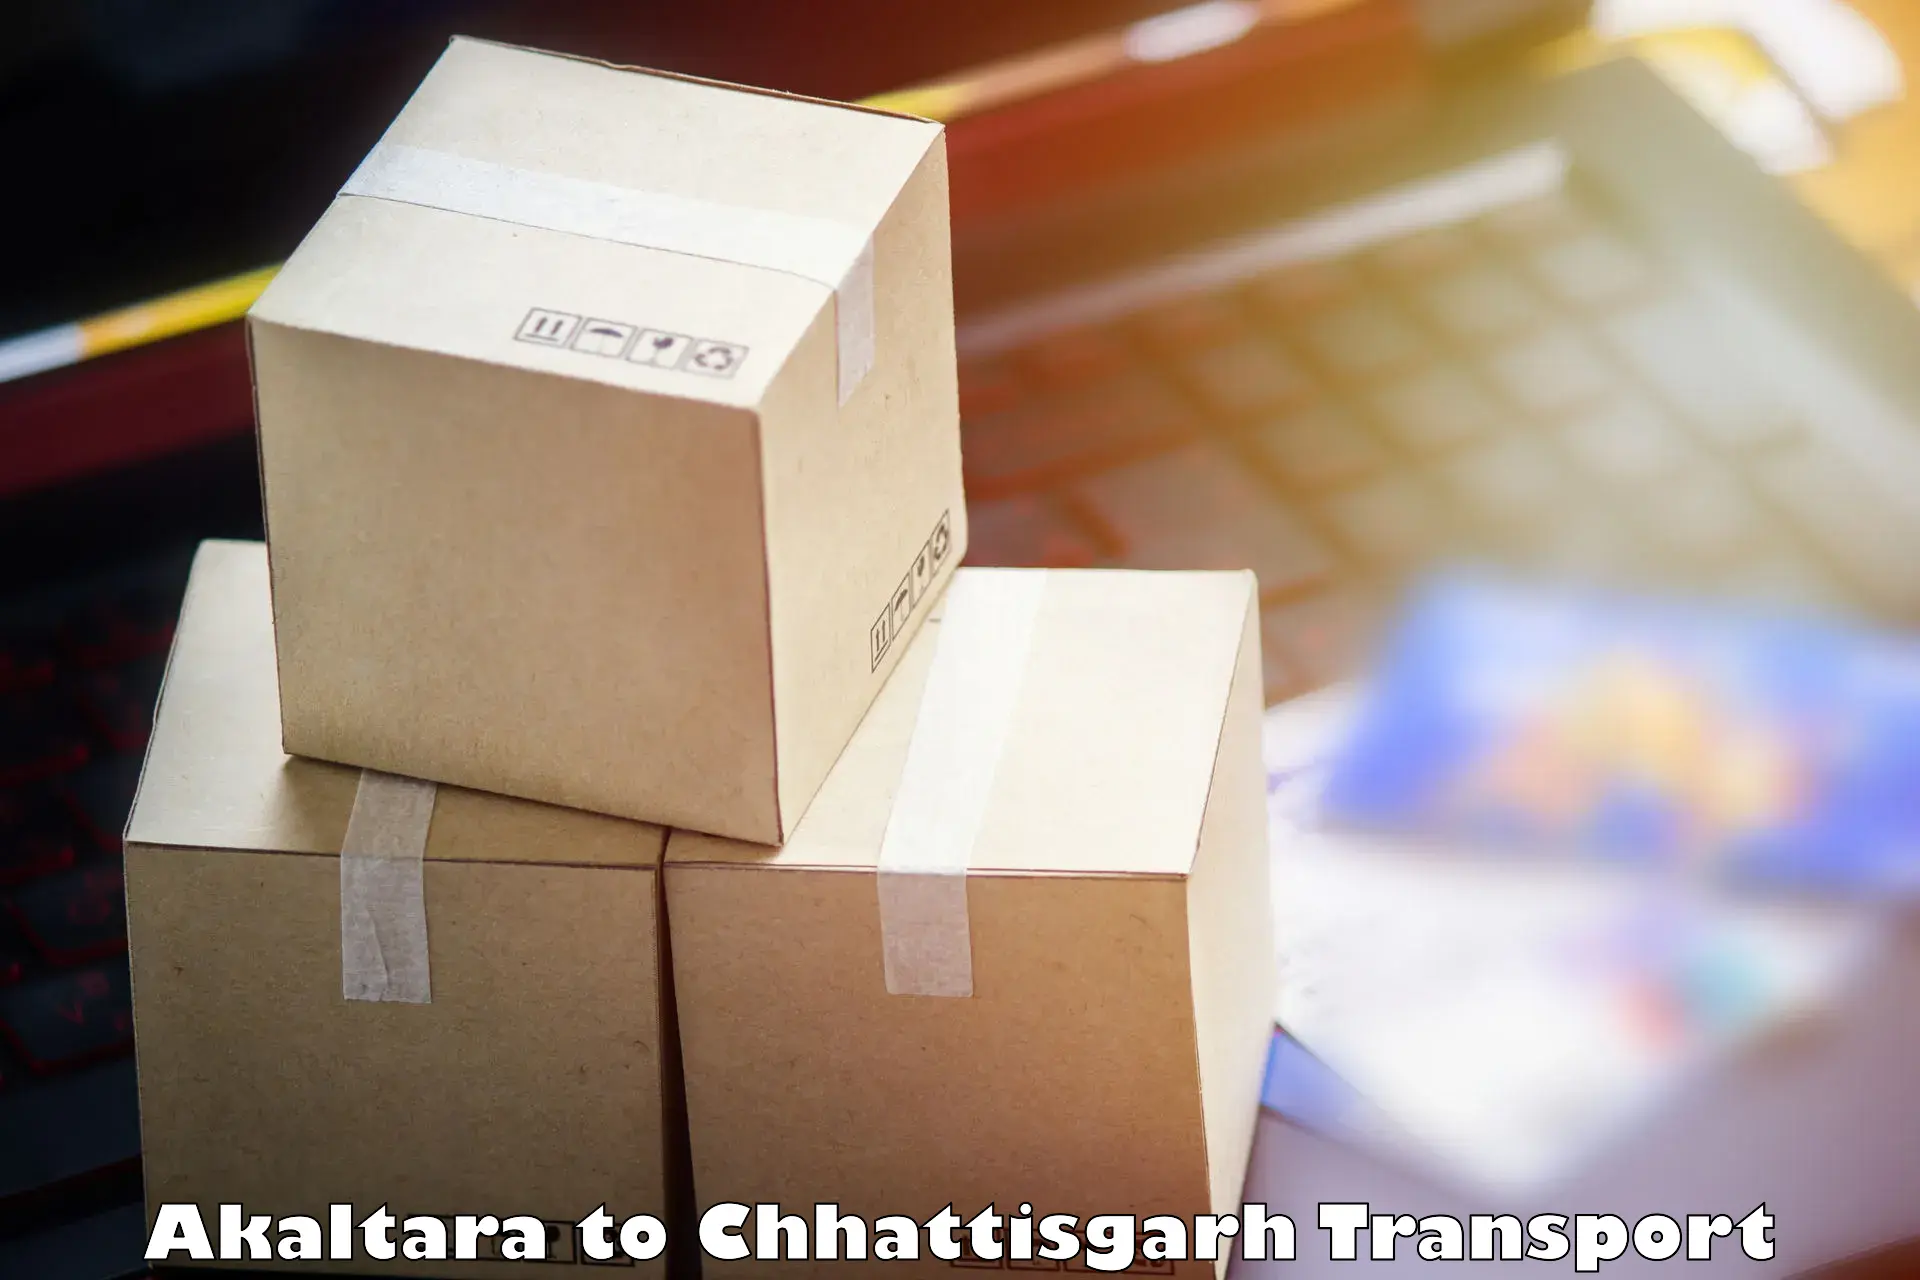 Pick up transport service Akaltara to bagbahra